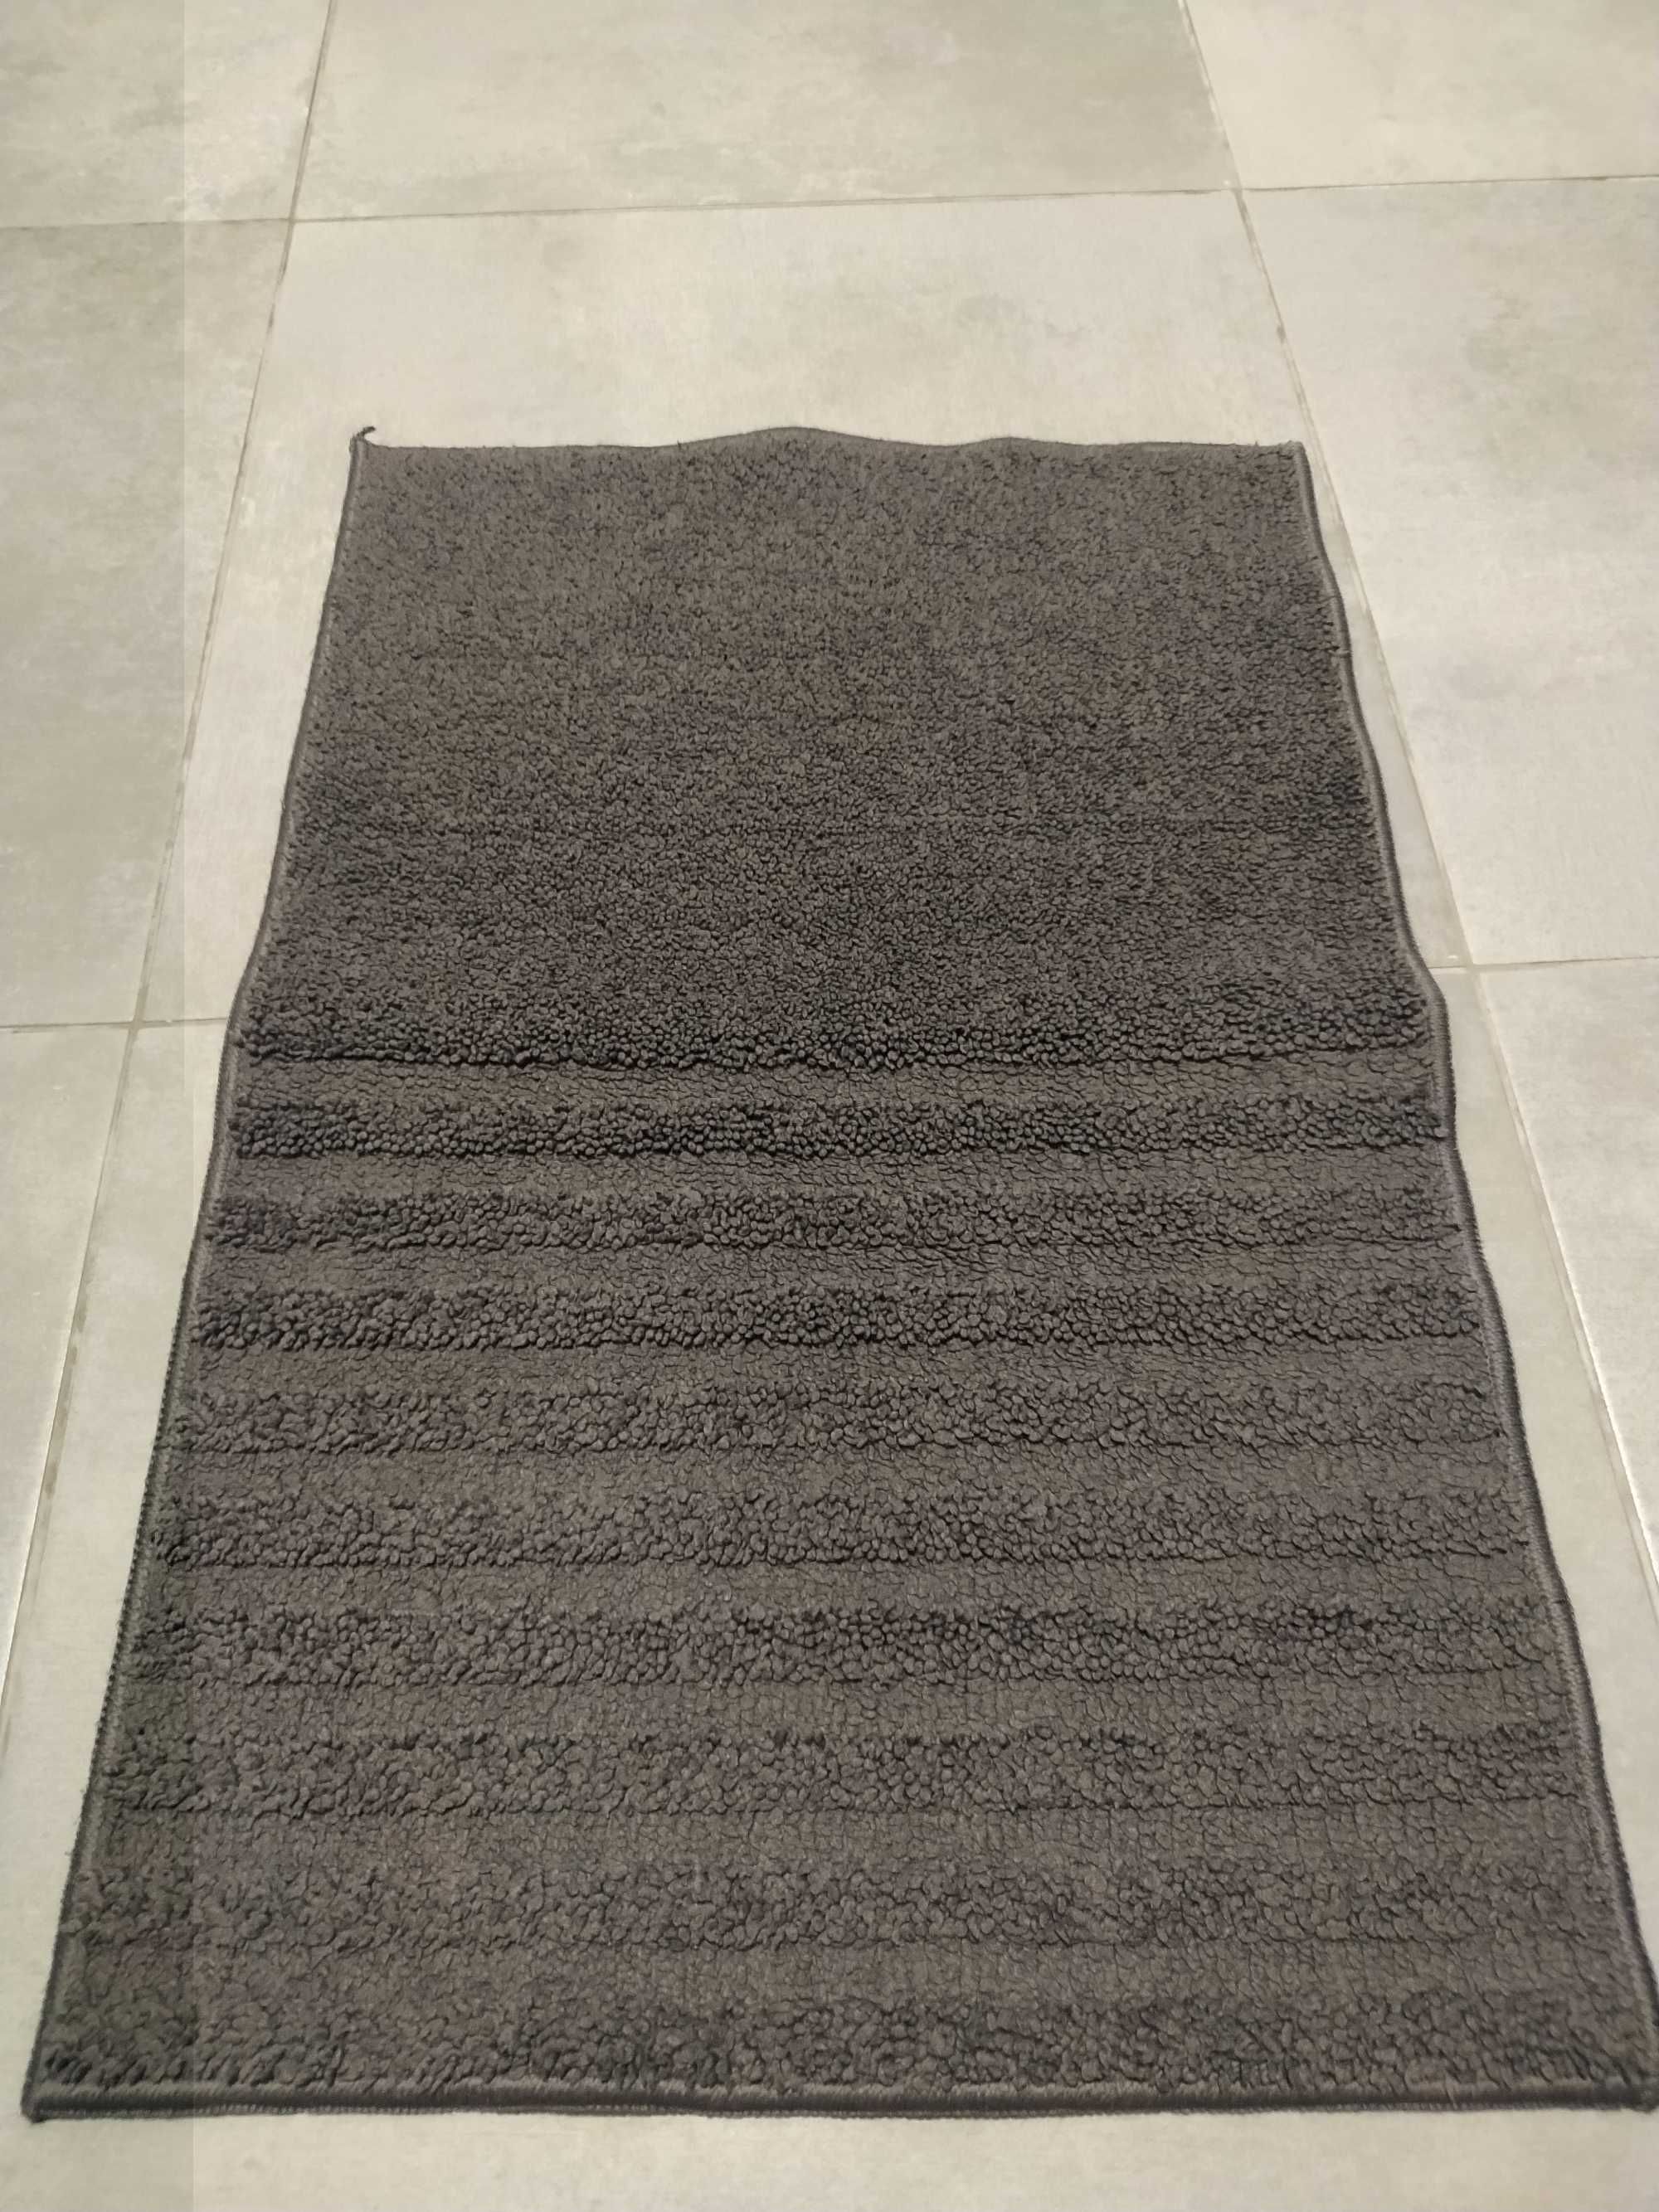 Szary dywanik łazienkowy / 60 x 40 / SPRAWNY / dywan / DARMOWA DOSTAWA